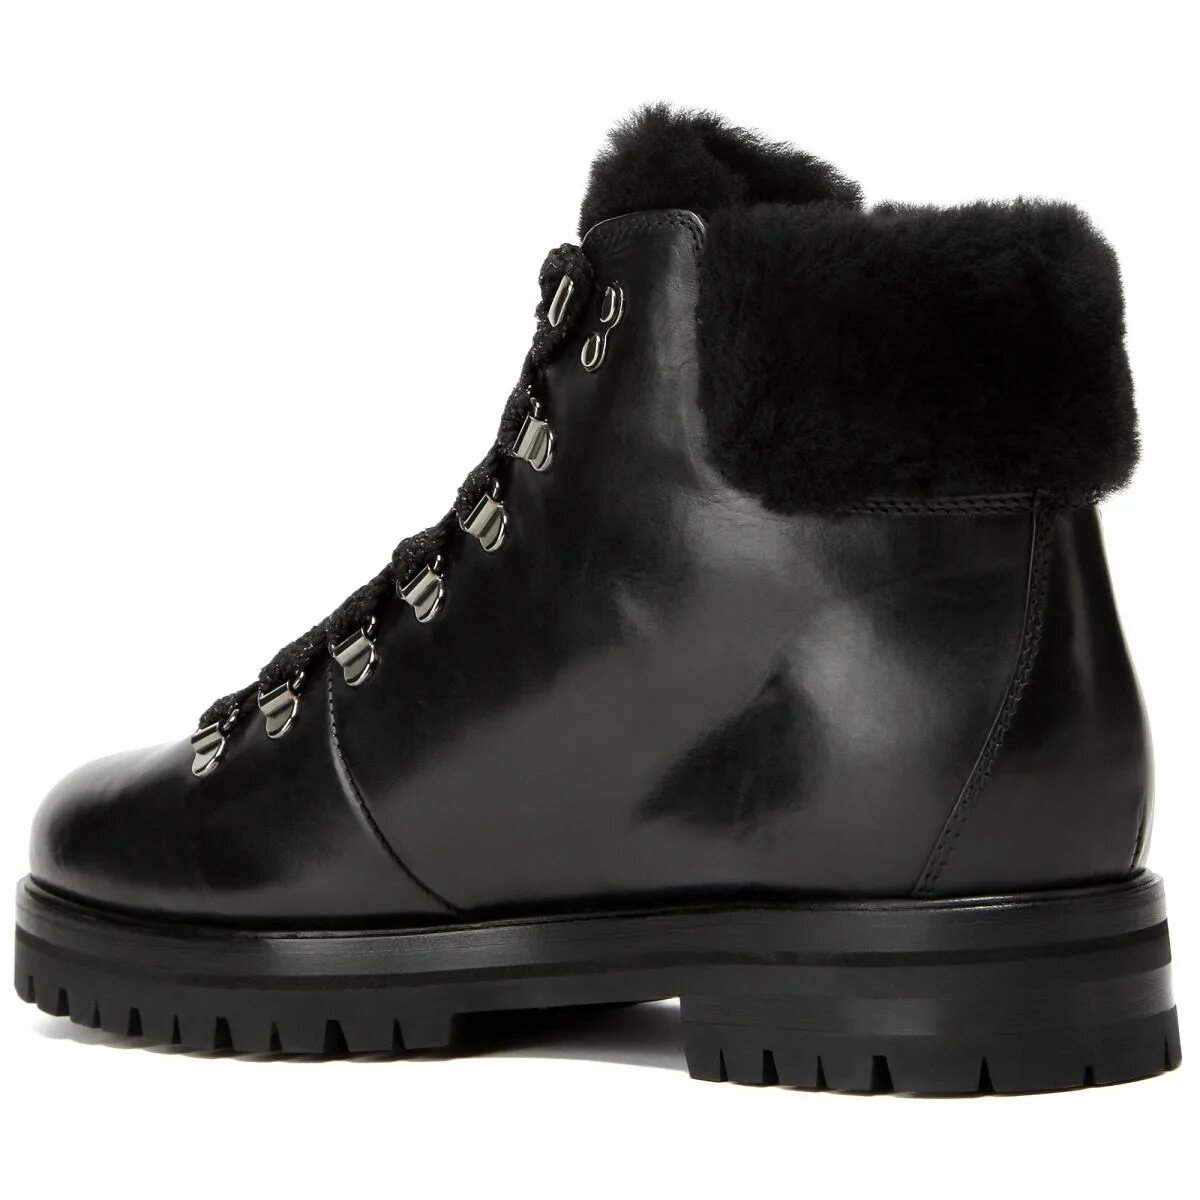 Agl обувь купить. AGL ботинки Alaska. AGL ботинки Fergus Opium. AGL зимние ботинки женские 717536. Attilio Giusti Leombruni обувь.